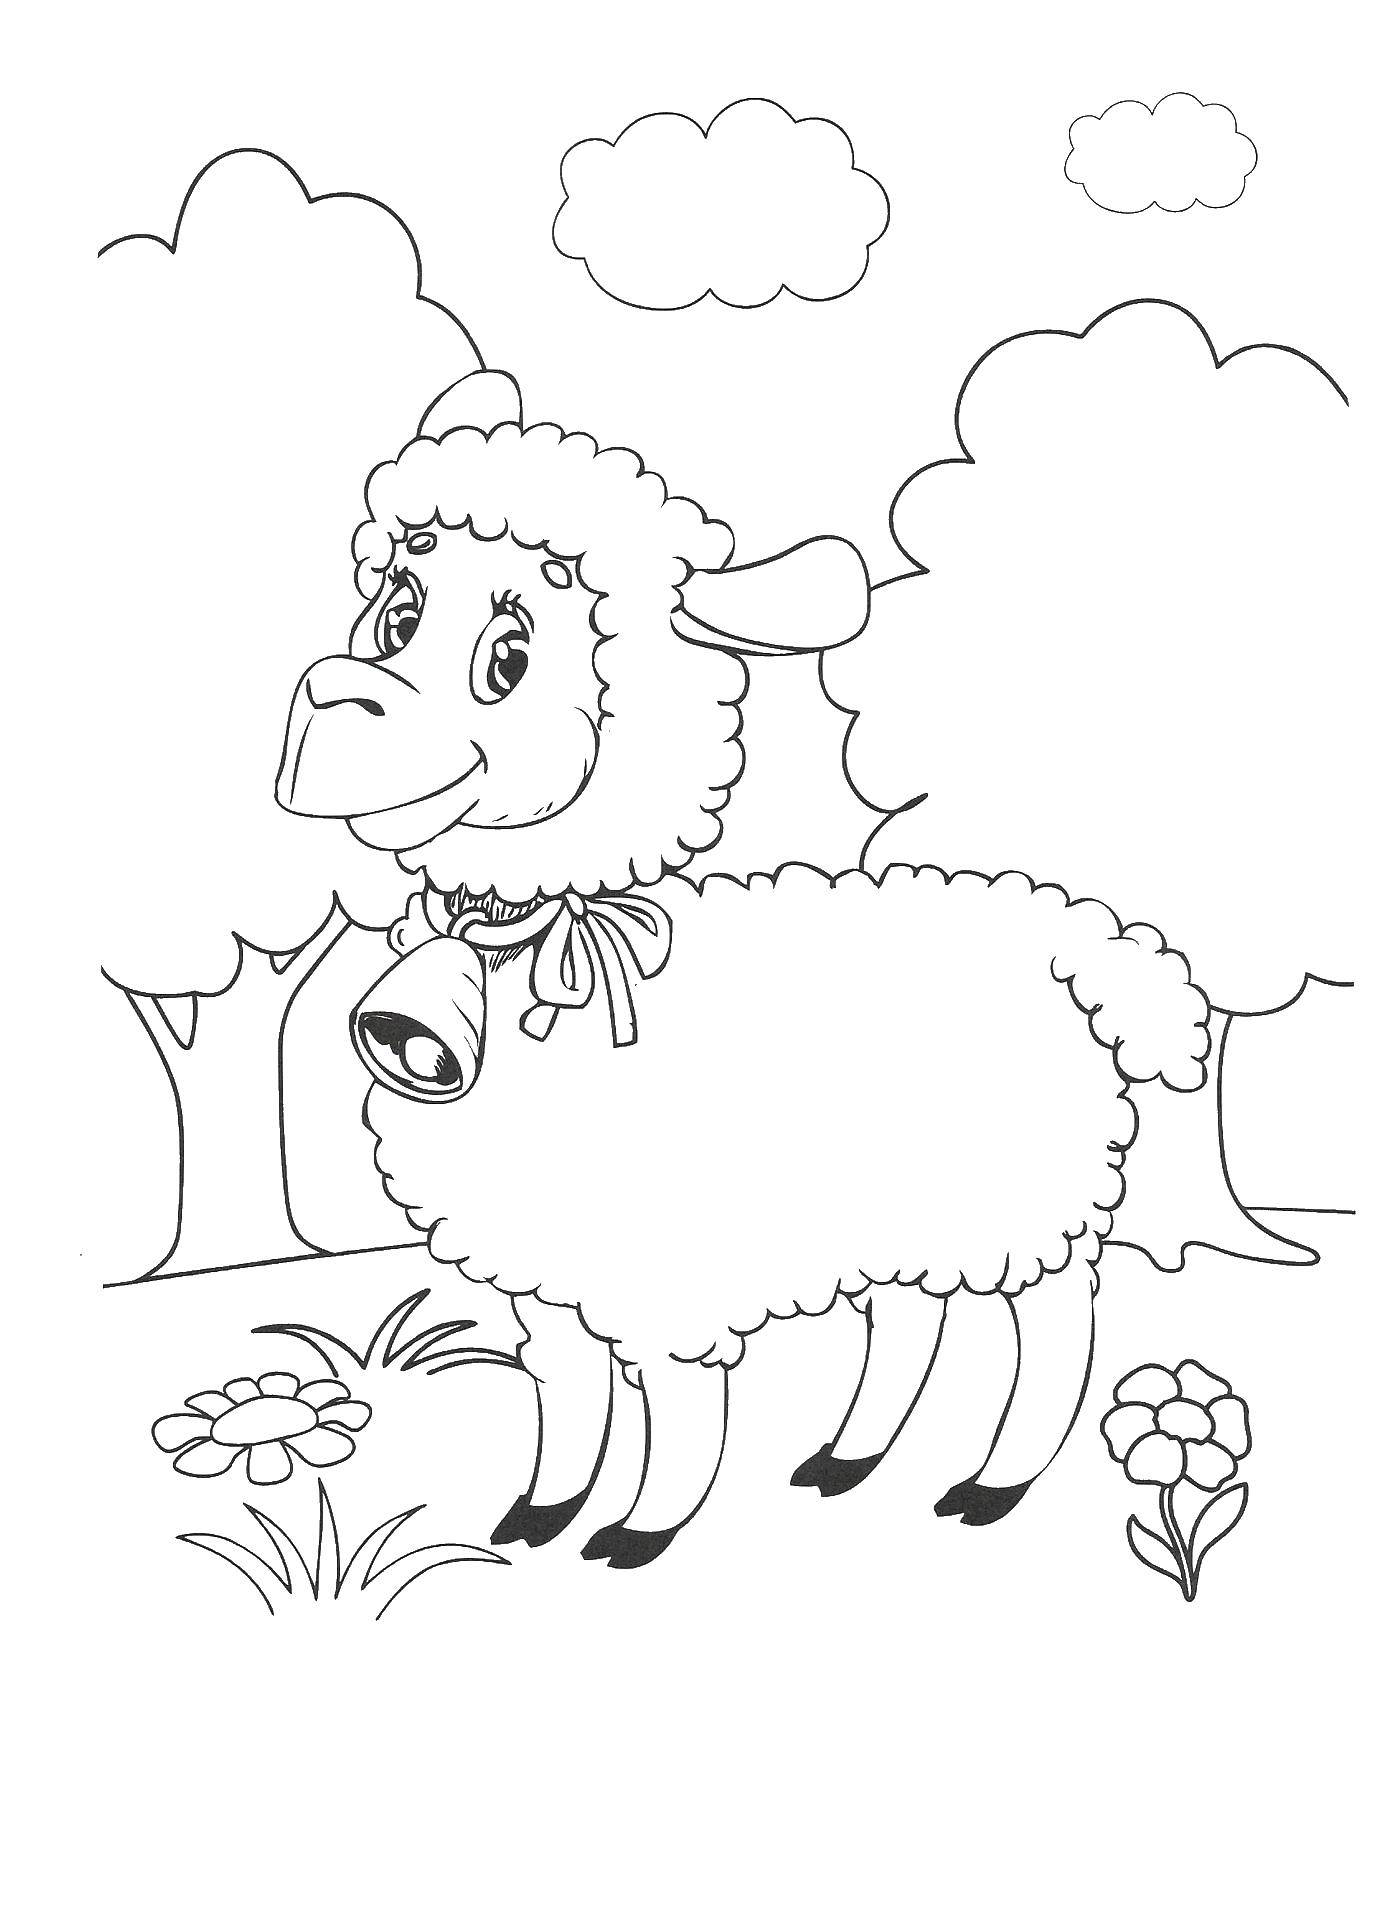 Coloring Lamb. Category Animals. Tags:  the lamb.